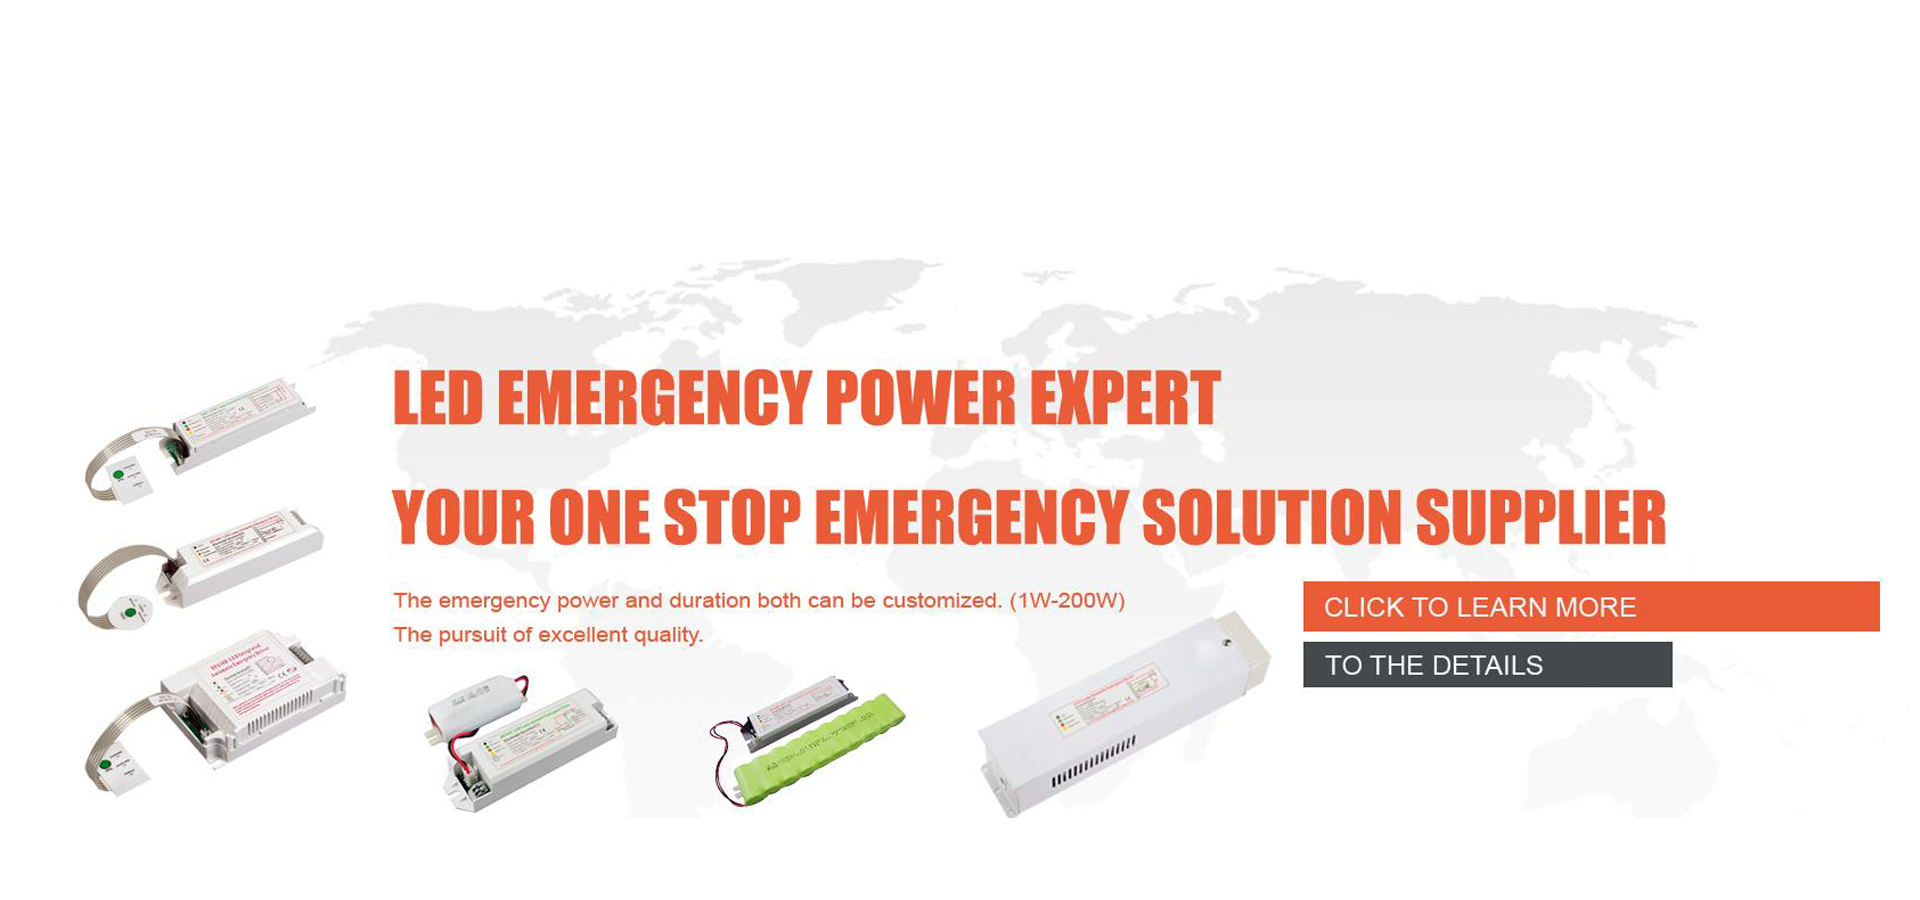 एलईडी आपातकालीन बिजली अपने एक आपातकालीन चिकित्सा आपूर्ति आपूर्तिकर्ता का विस्तार करें